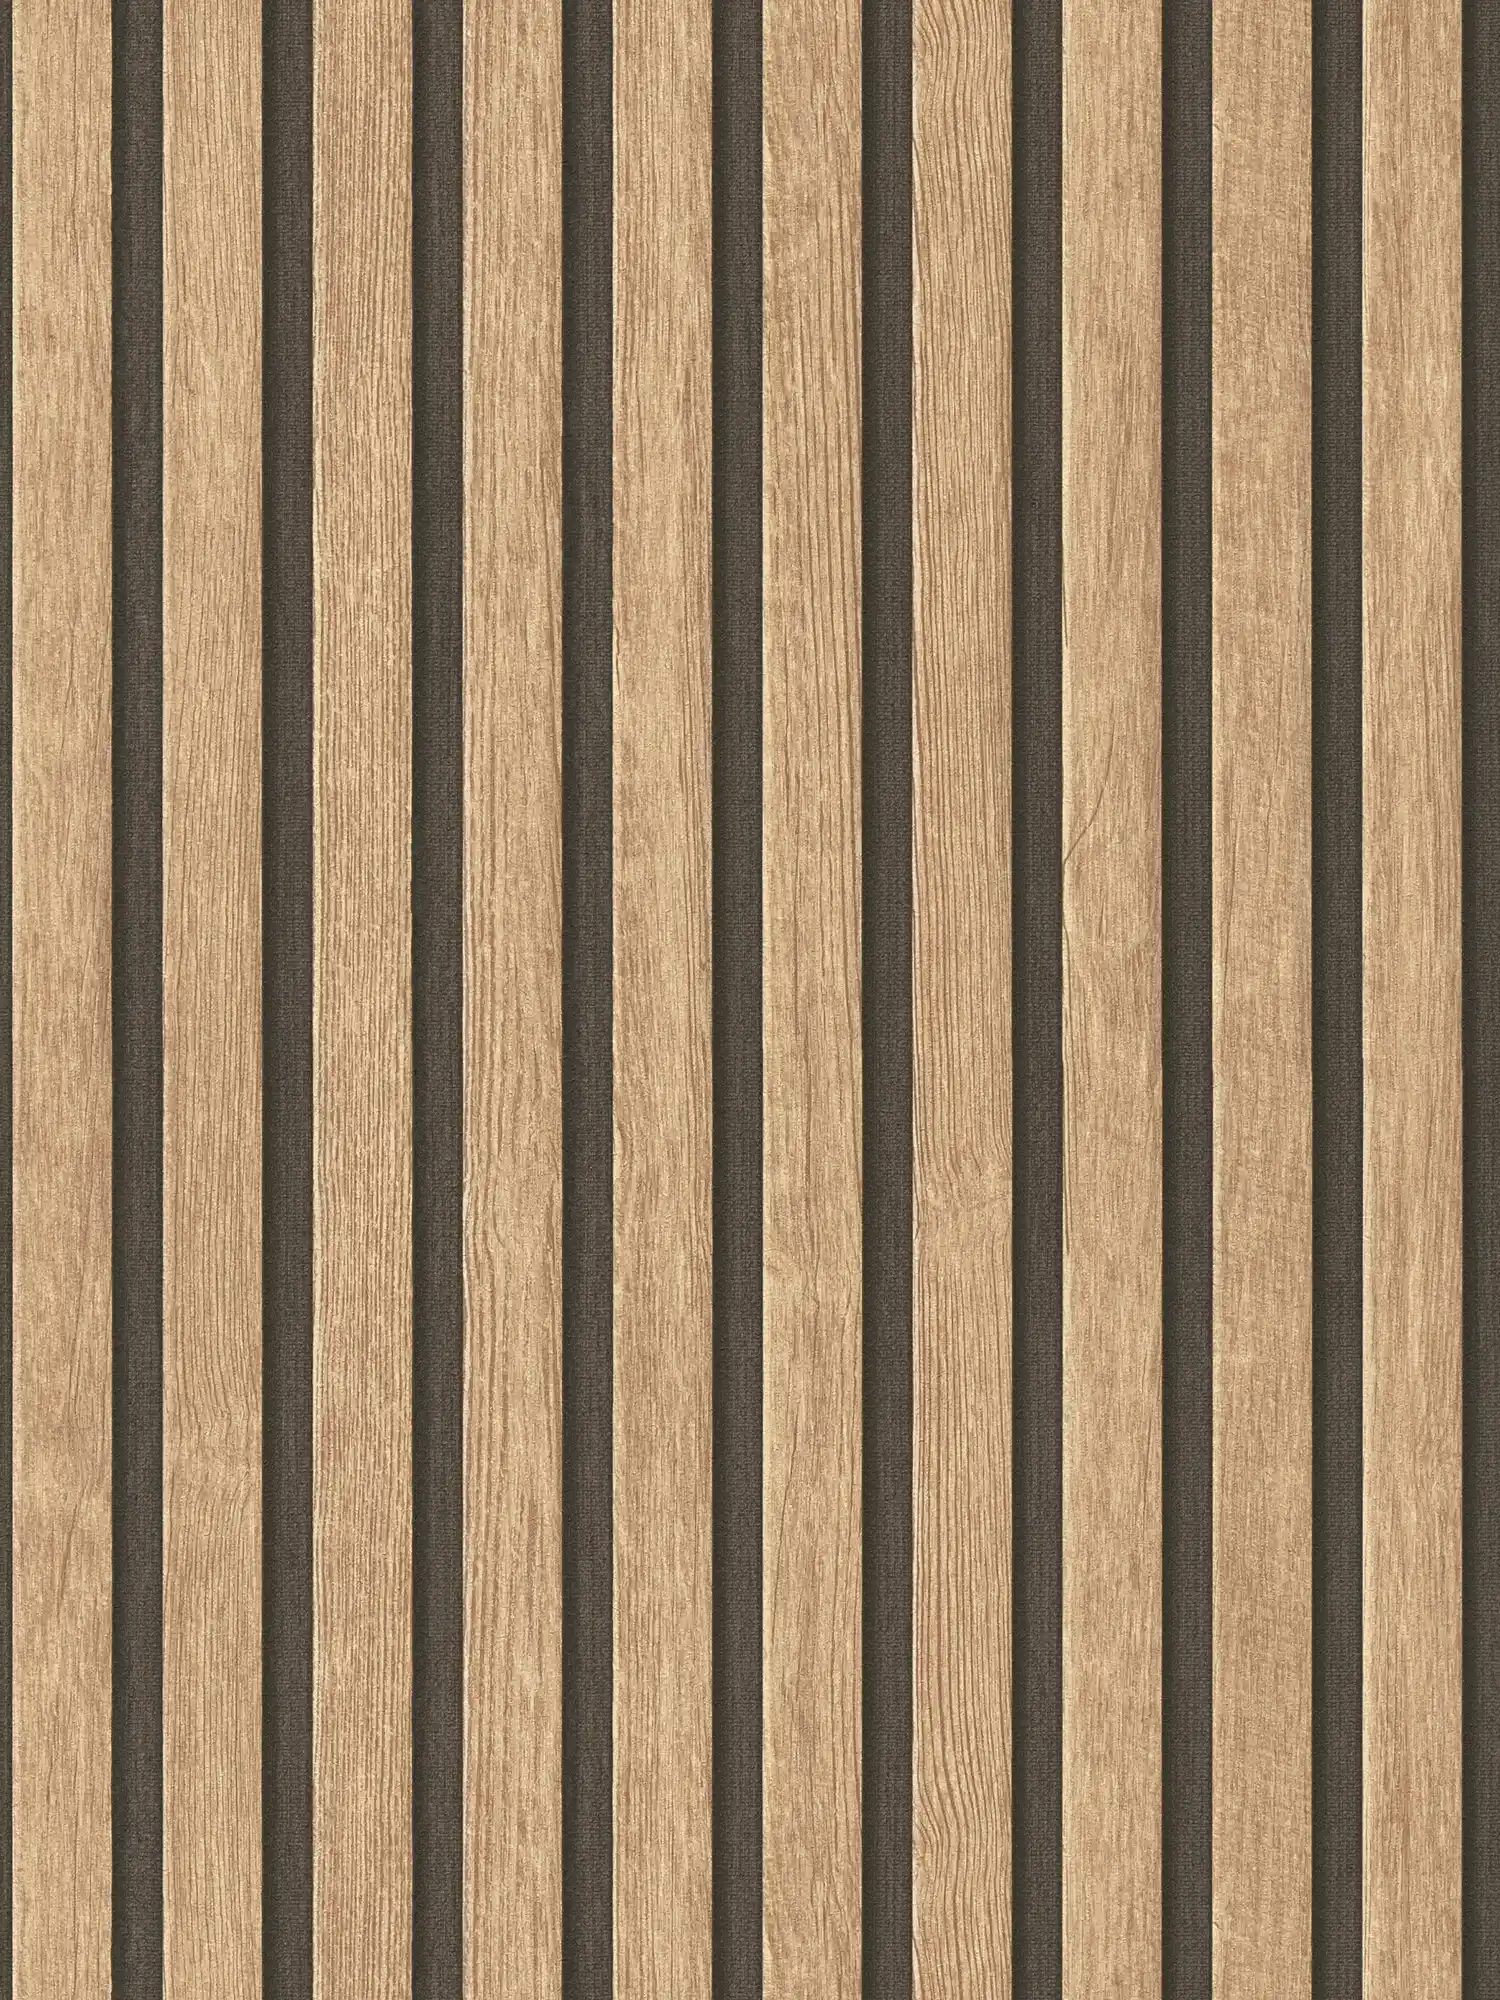 behang houtlook met paneelpatroon - beige, bruin
